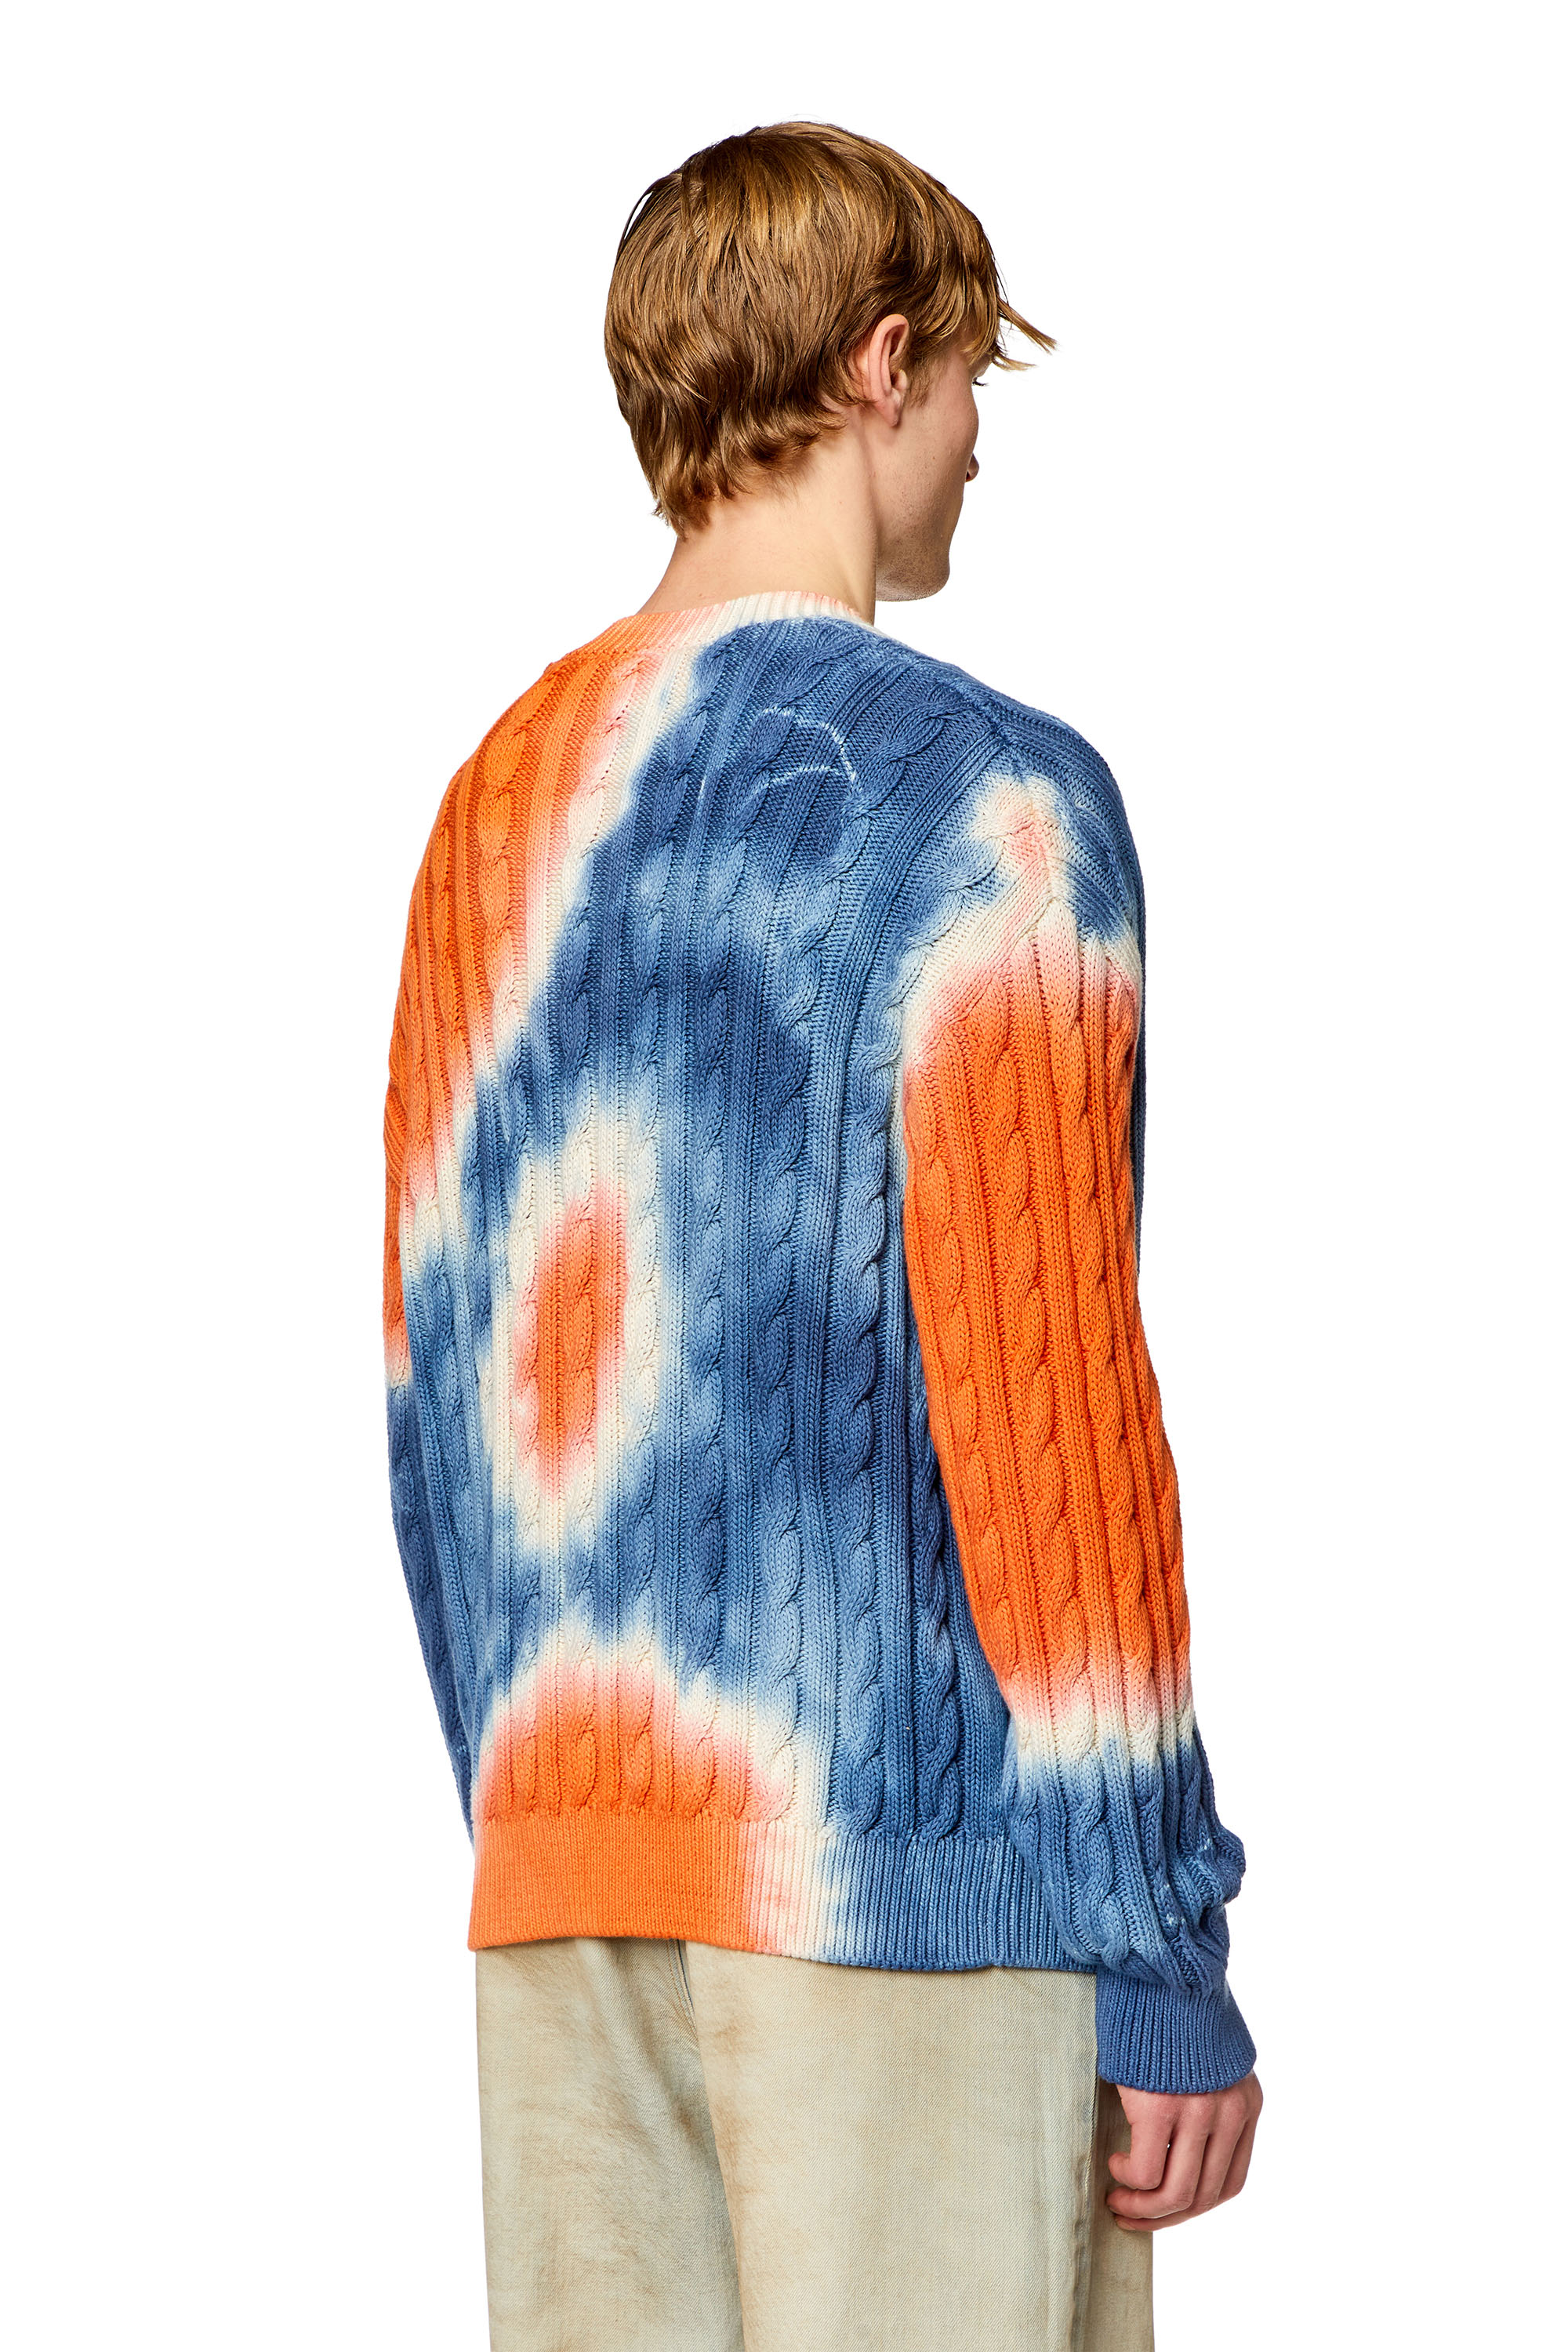 Diesel - K-JONNY, Man Tie-dye cardigan in cable-knit cotton in Multicolor - Image 2